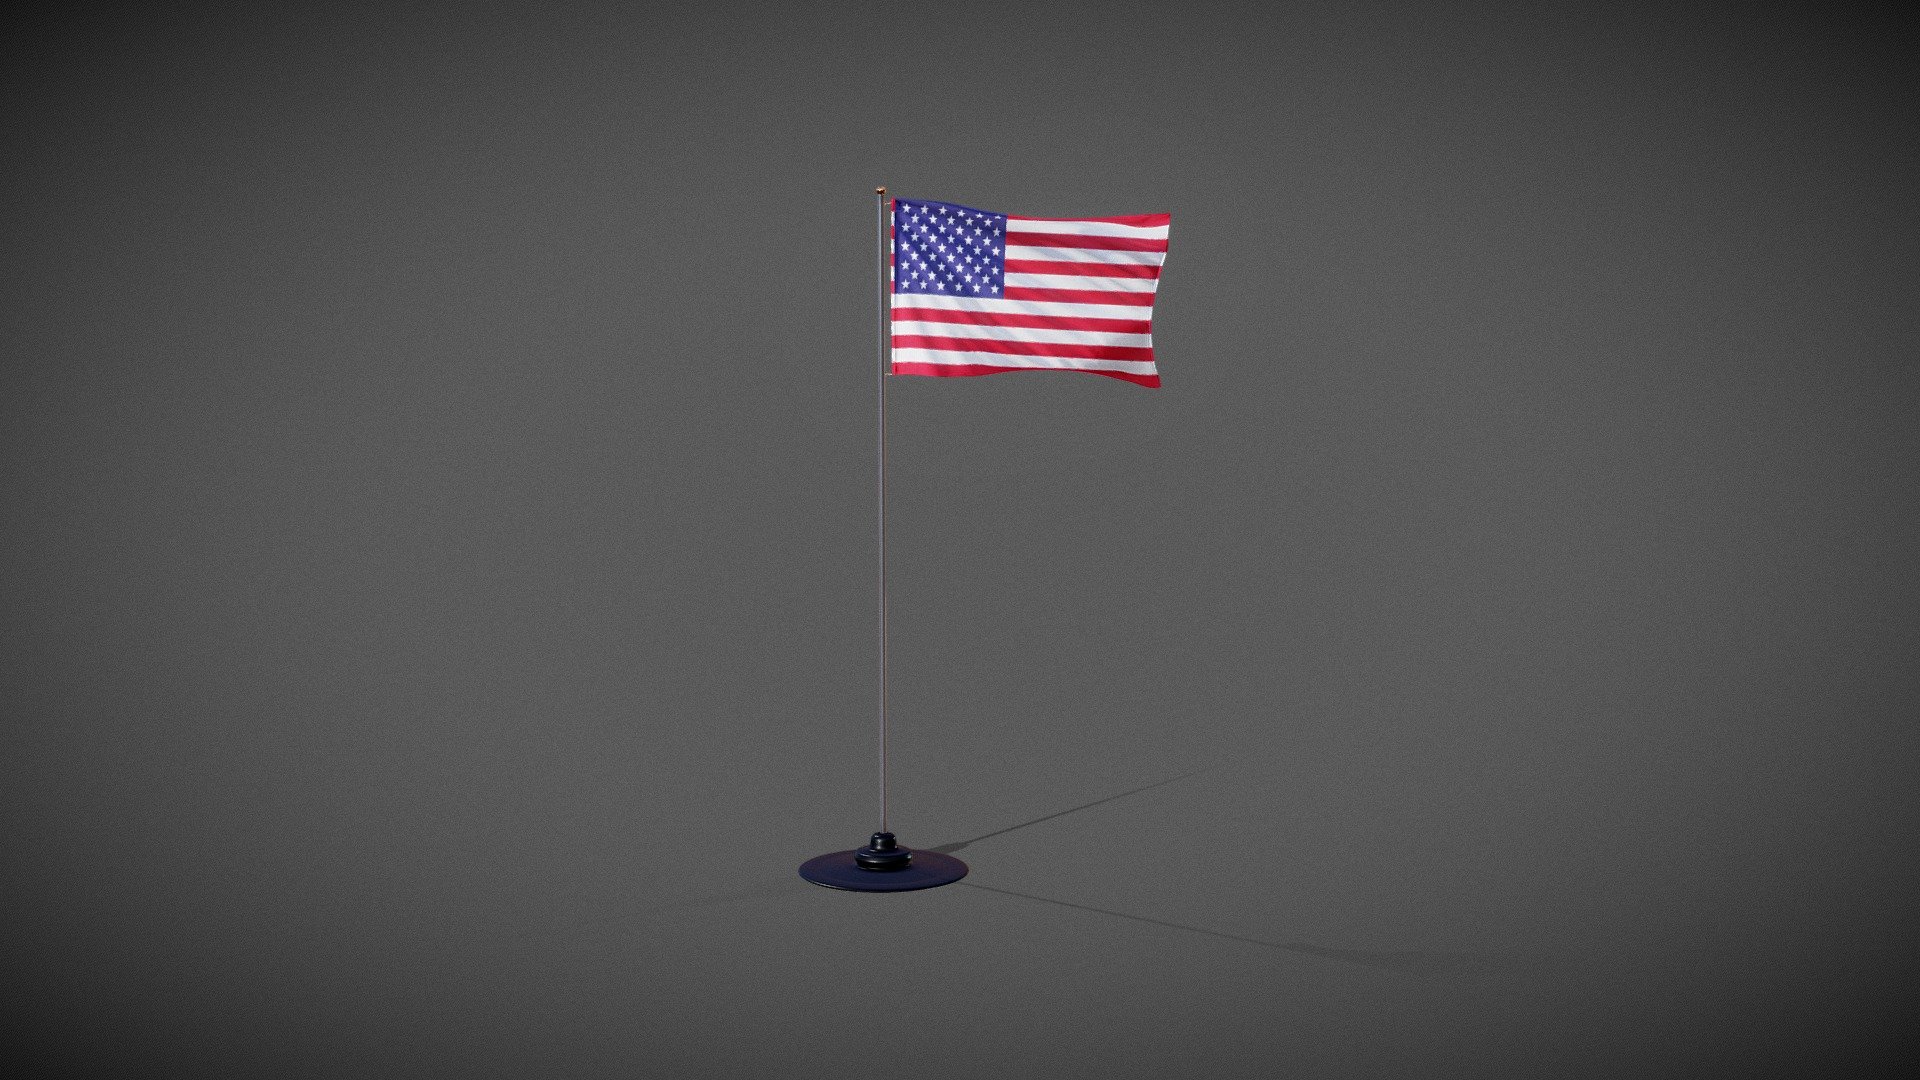 Animated USA flag